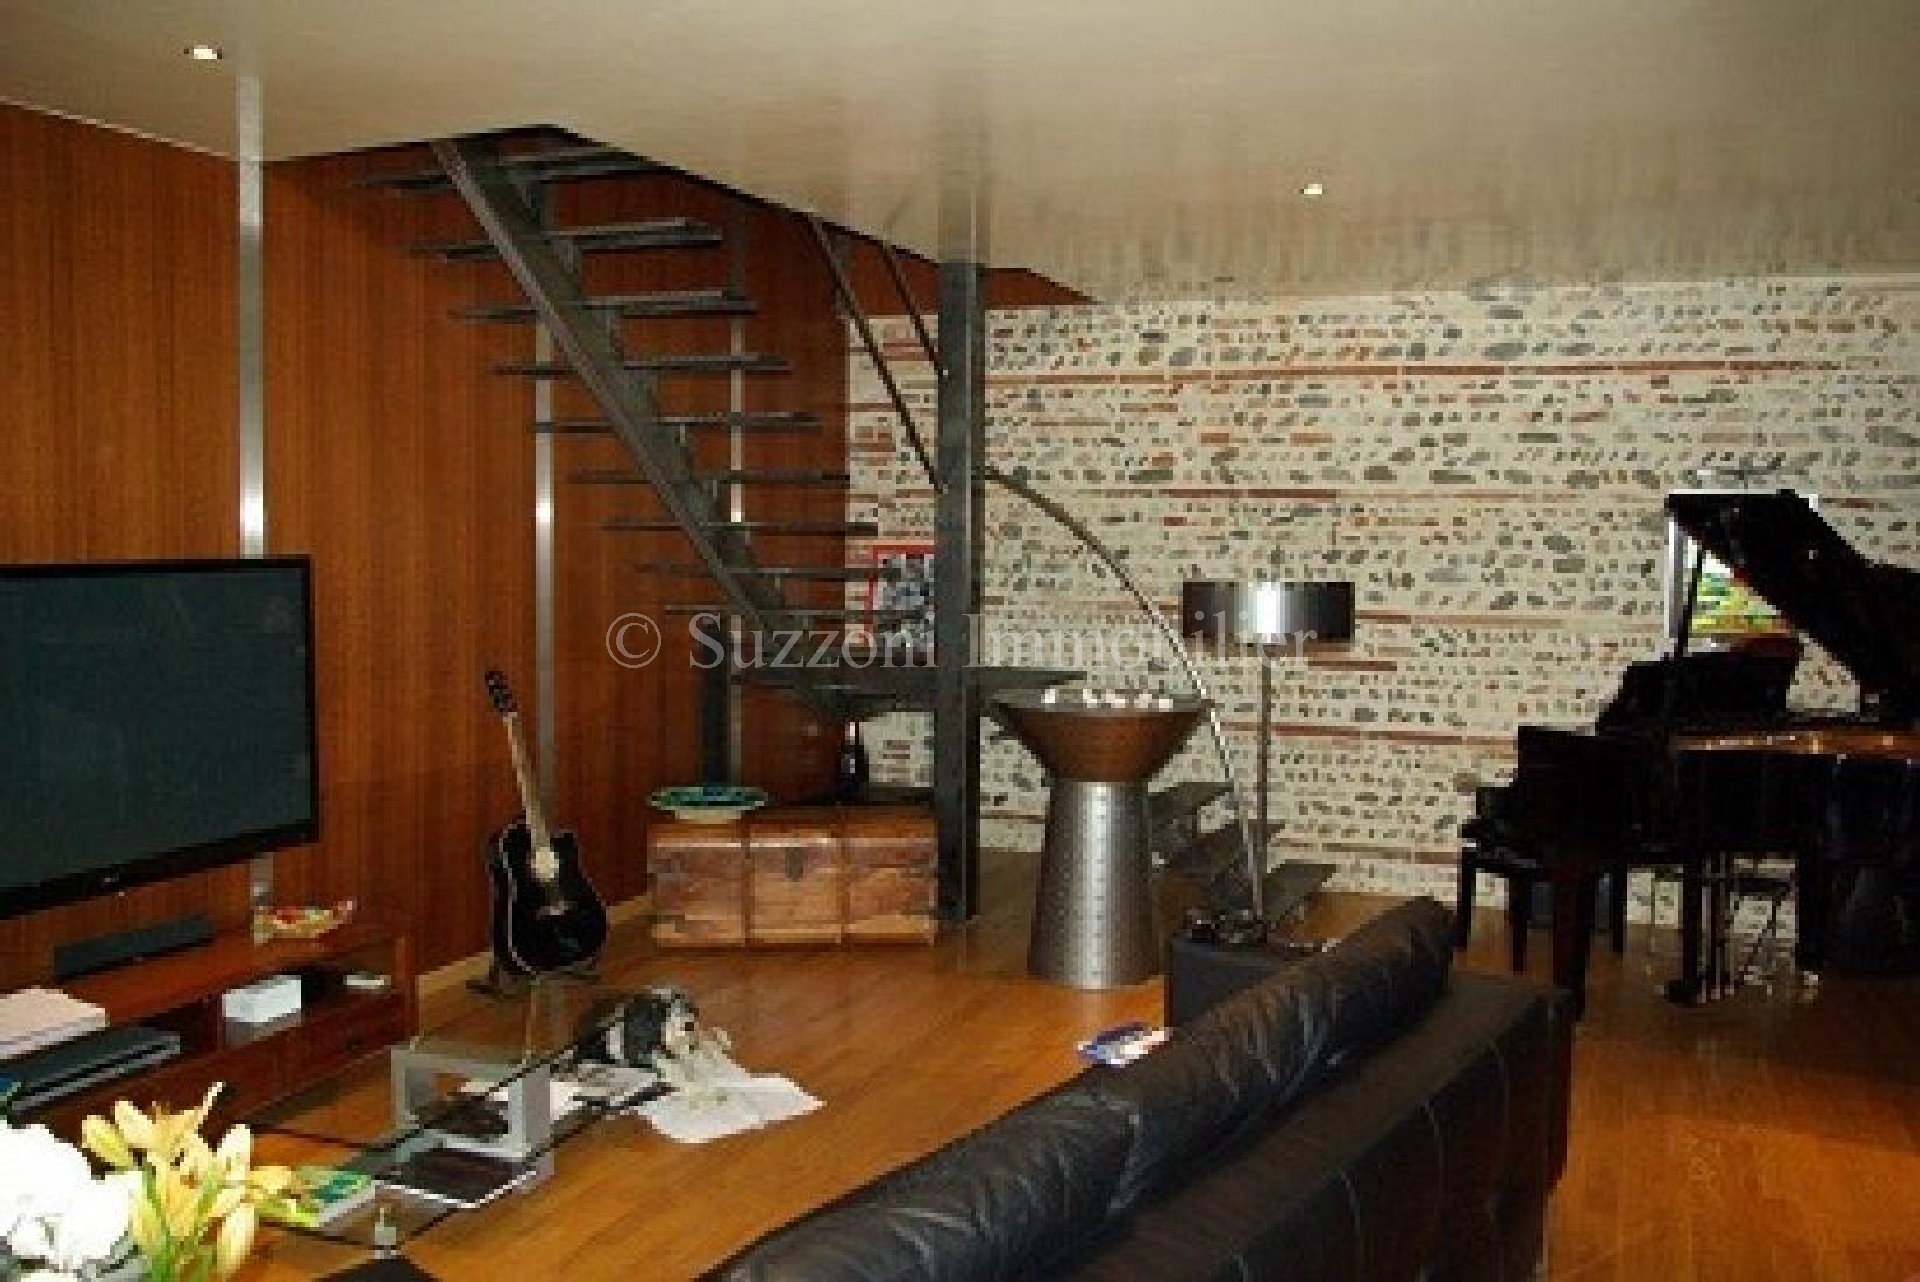 Vente appartement - LA SEYNE SUR MER 56,23 m², 2 pièces